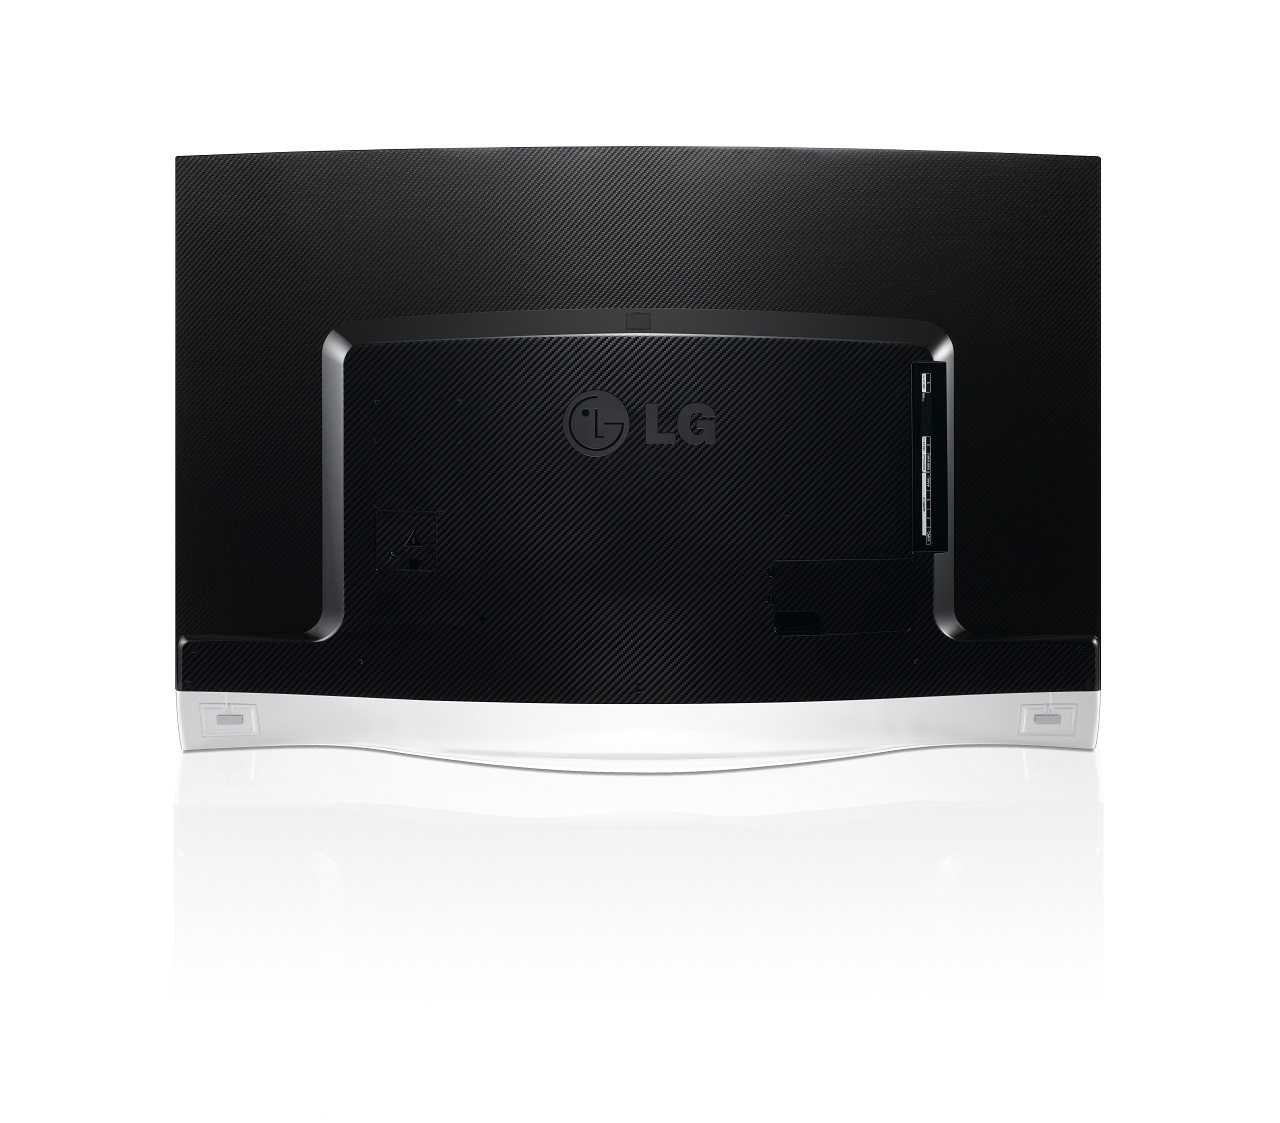 Lg 55uc970v - купить , скидки, цена, отзывы, обзор, характеристики - телевизоры